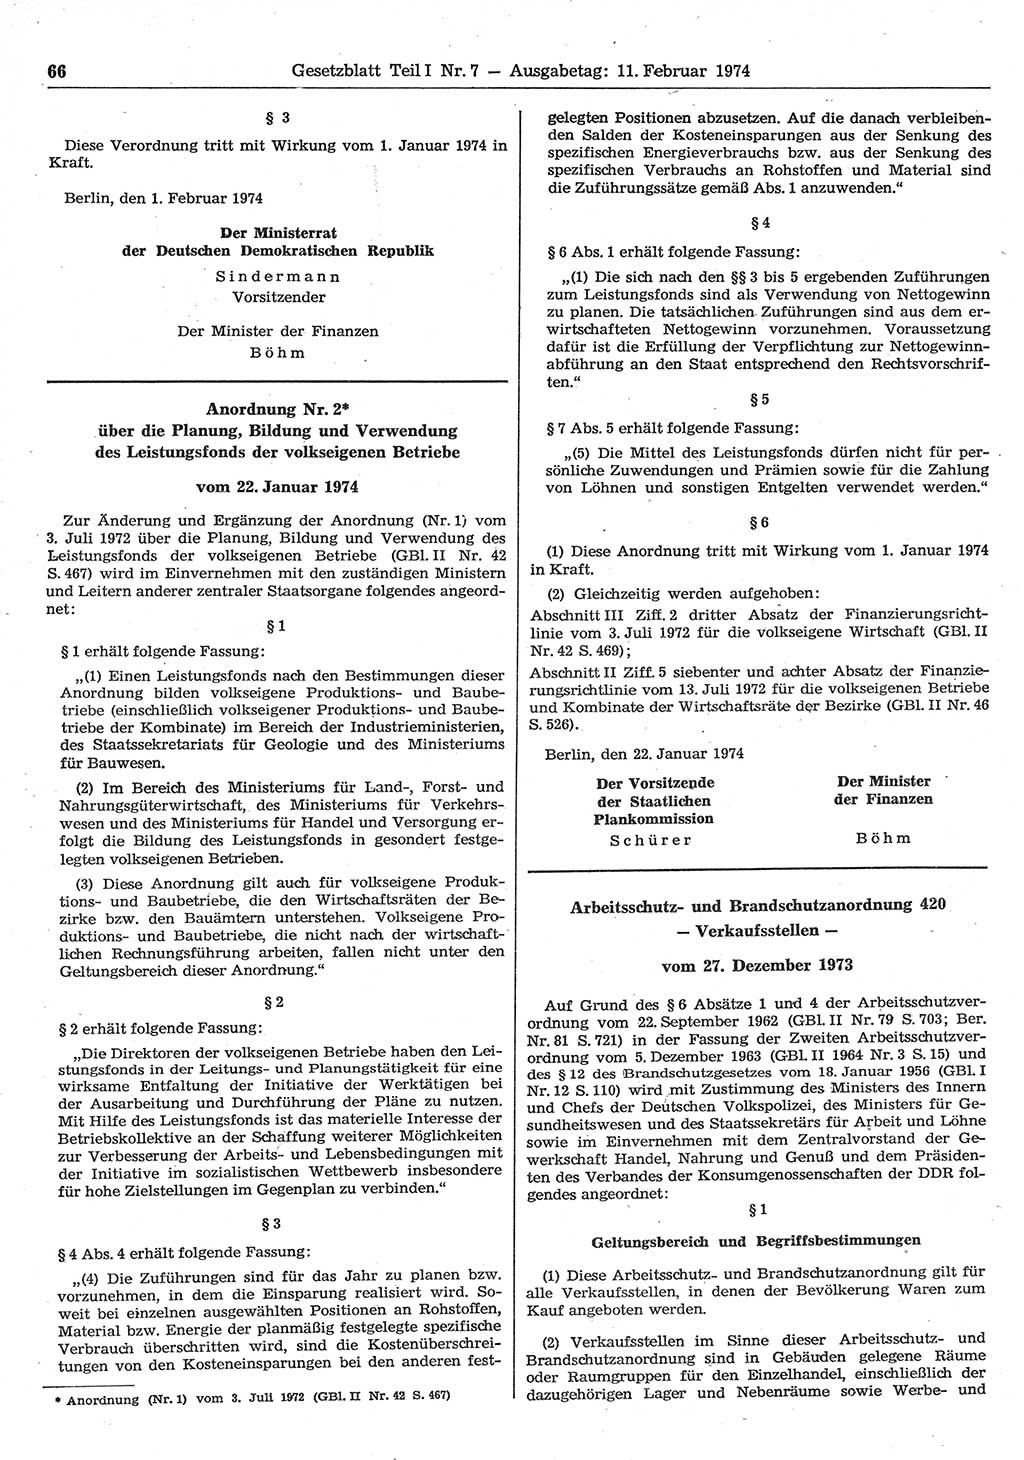 Gesetzblatt (GBl.) der Deutschen Demokratischen Republik (DDR) Teil Ⅰ 1974, Seite 66 (GBl. DDR Ⅰ 1974, S. 66)